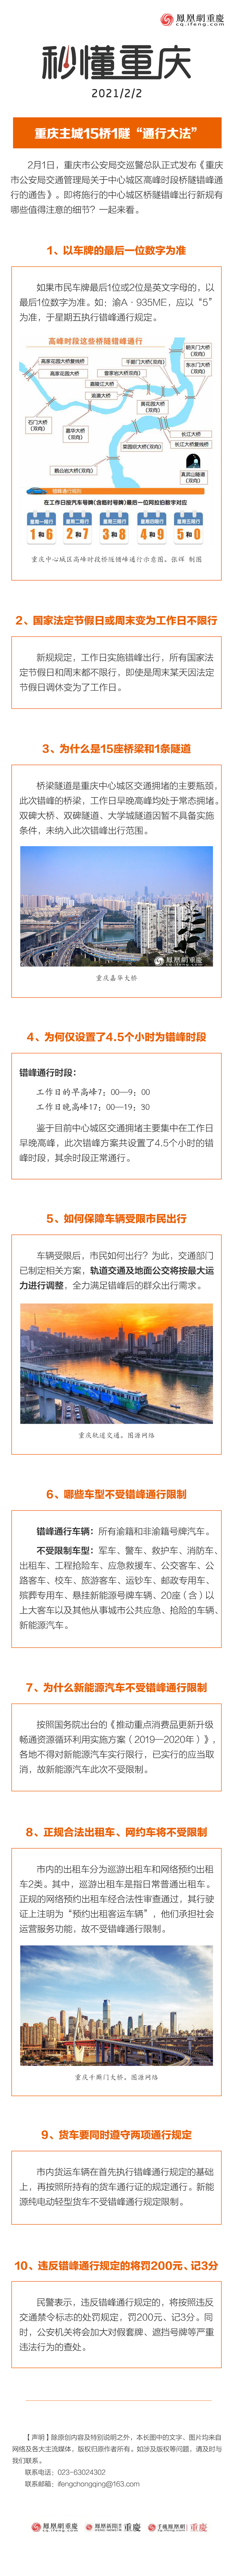 秒懂重庆 | 重庆主城15桥1隧“通行大法”